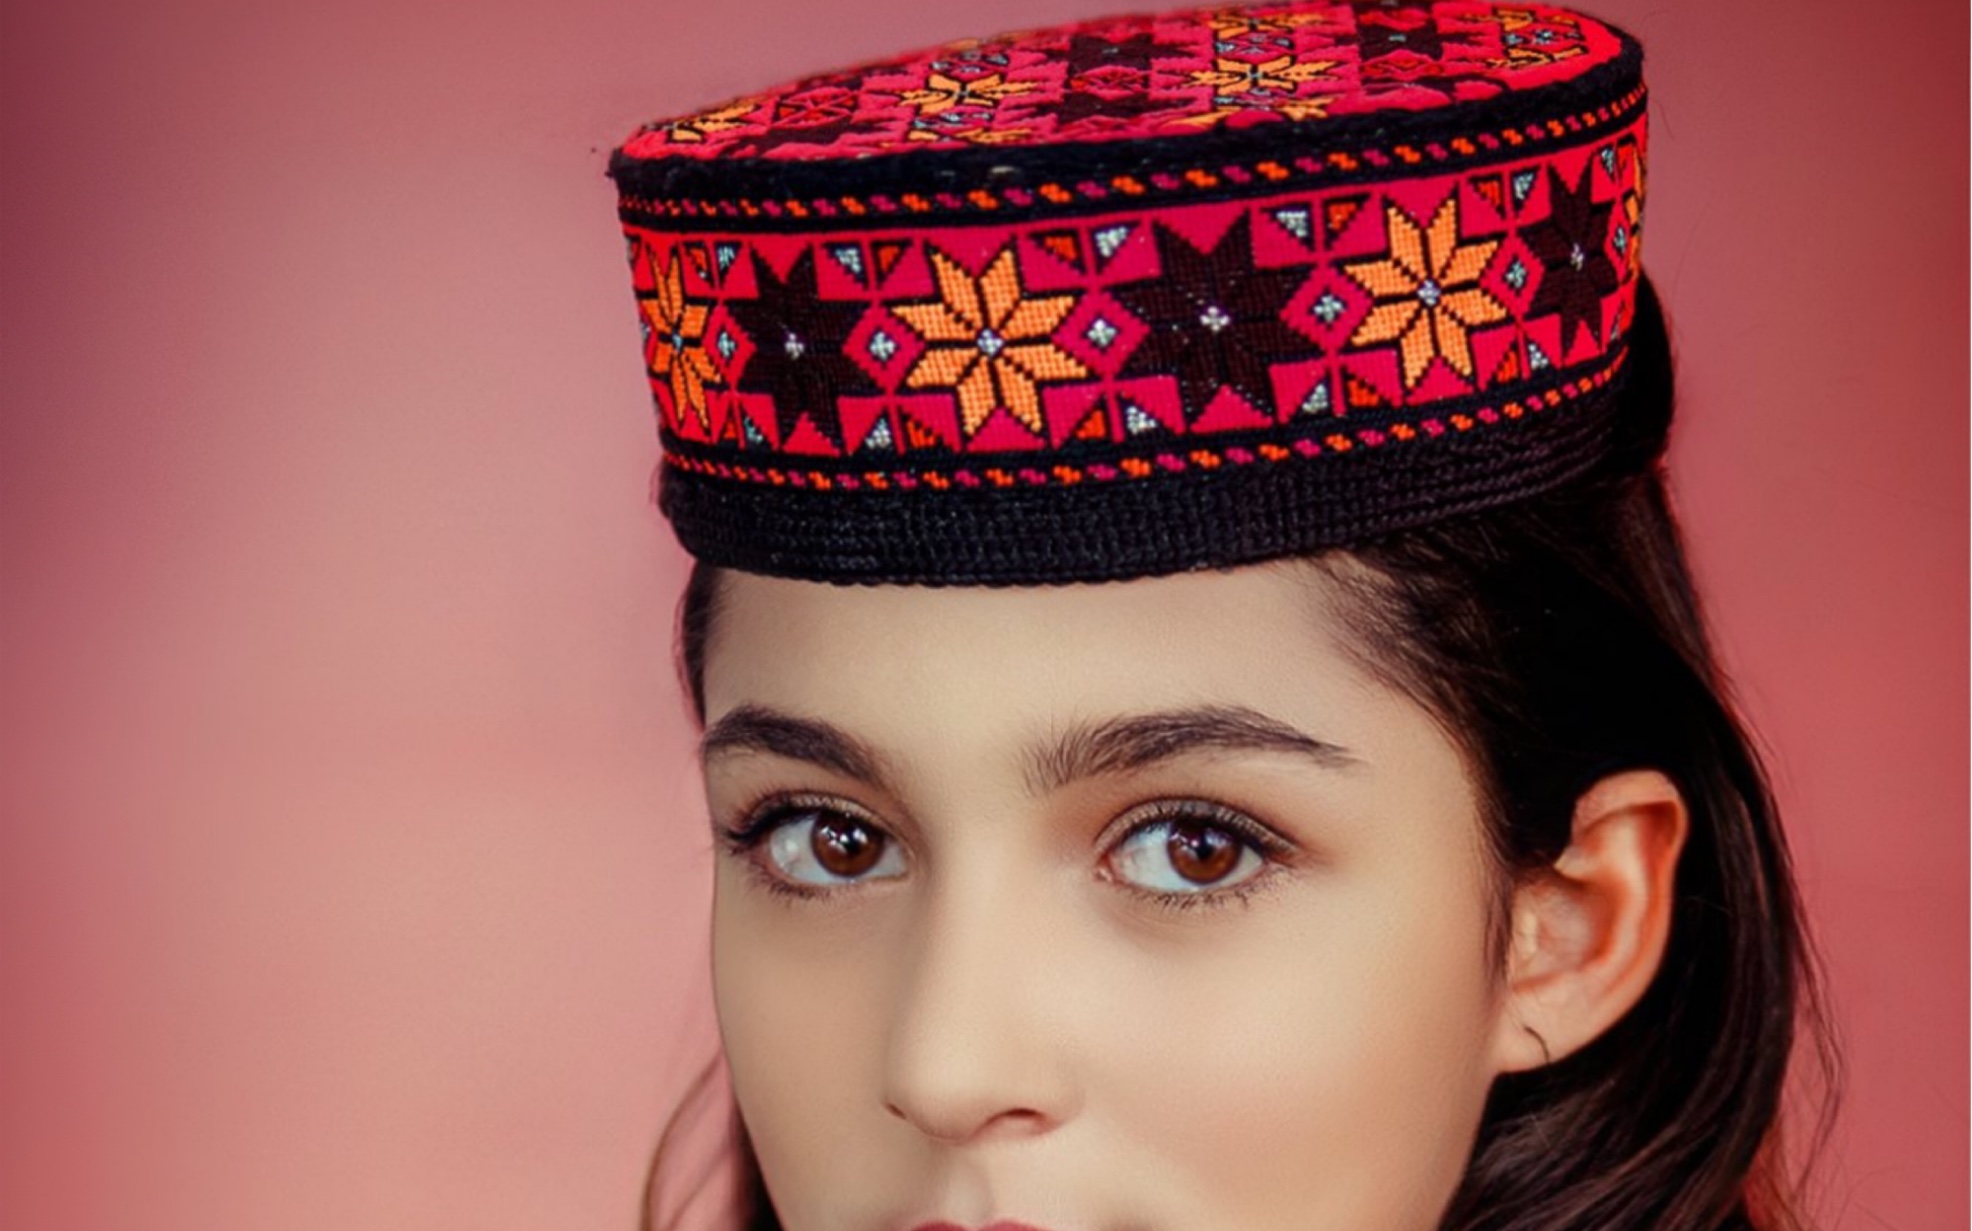 新疆塔吉克族漂亮美女图片